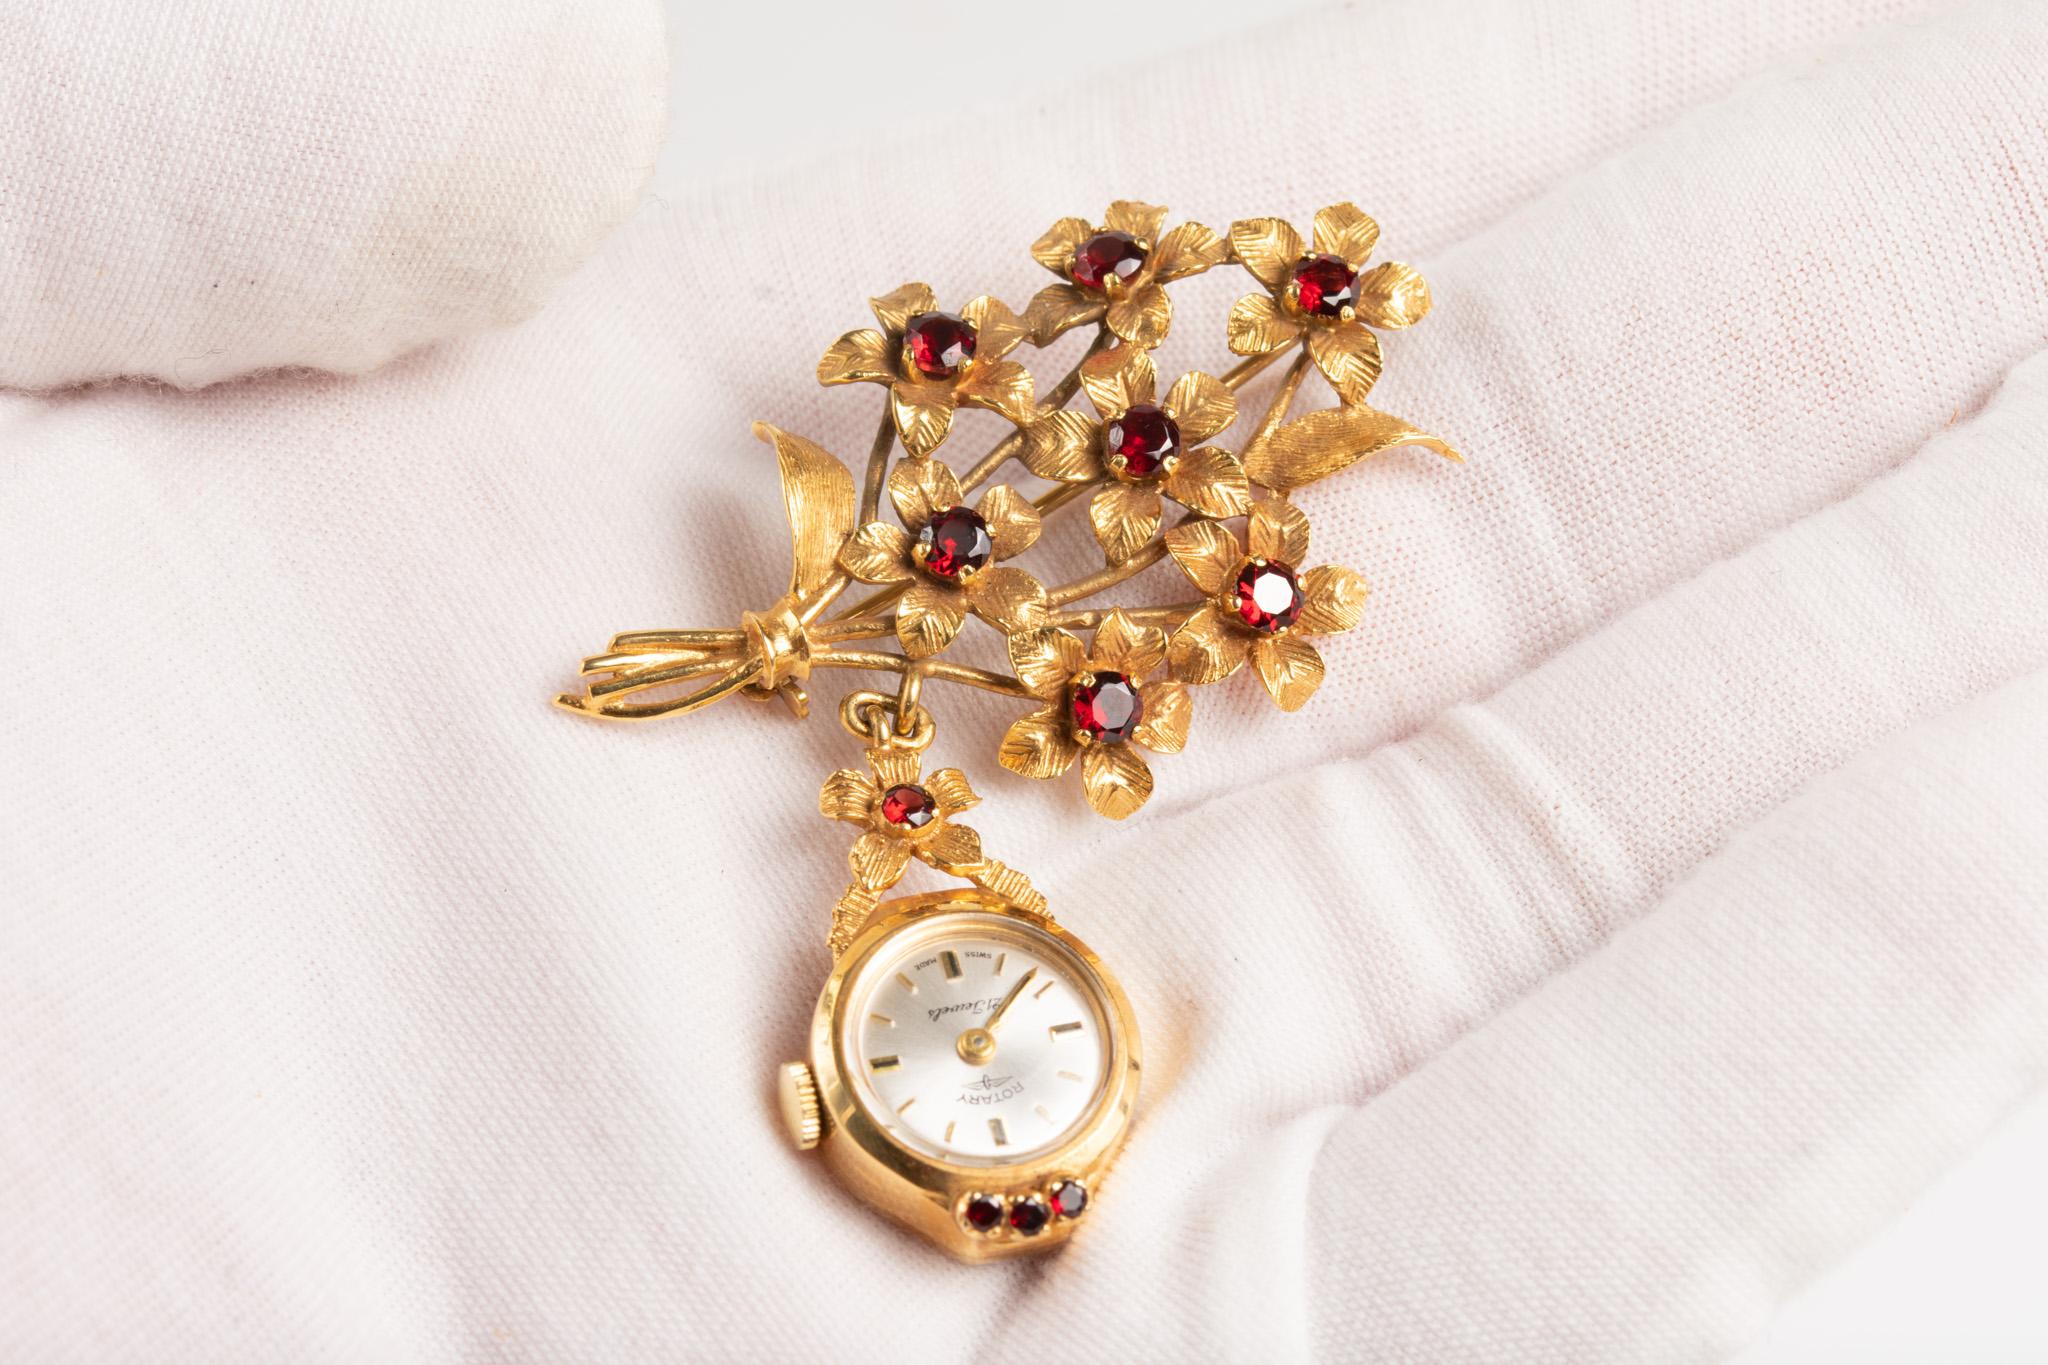 gemstone watch vintage